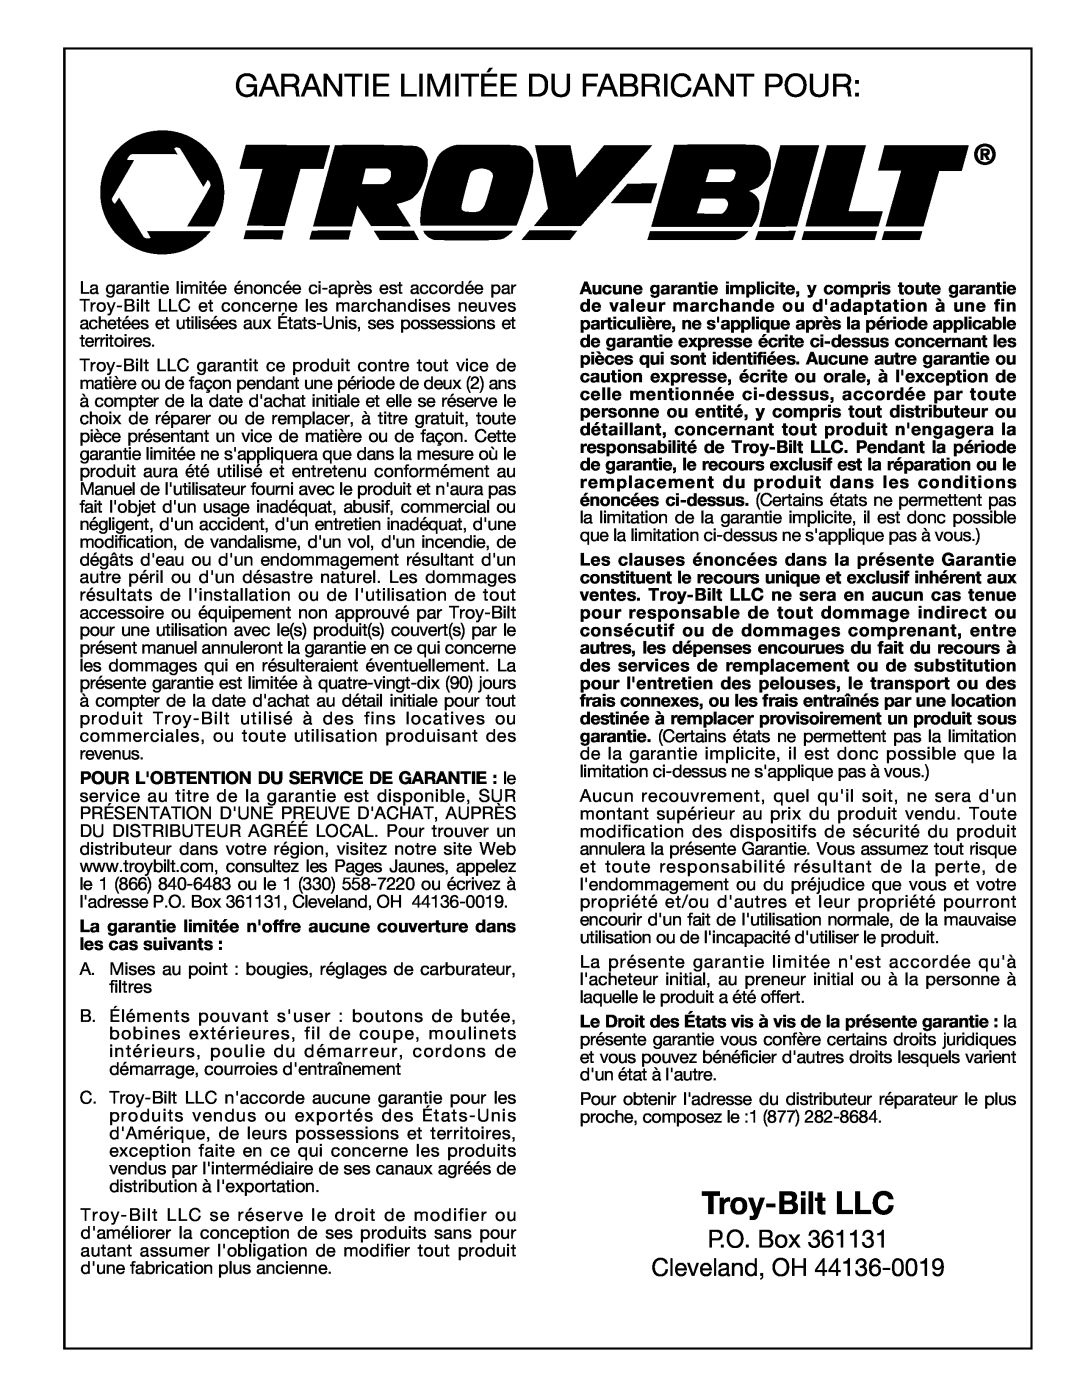 Troy-Bilt 769-00425A manual Garantie Limitée Du Fabricant Pour, Troy-Bilt LLC, P.O. Box Cleveland, OH 